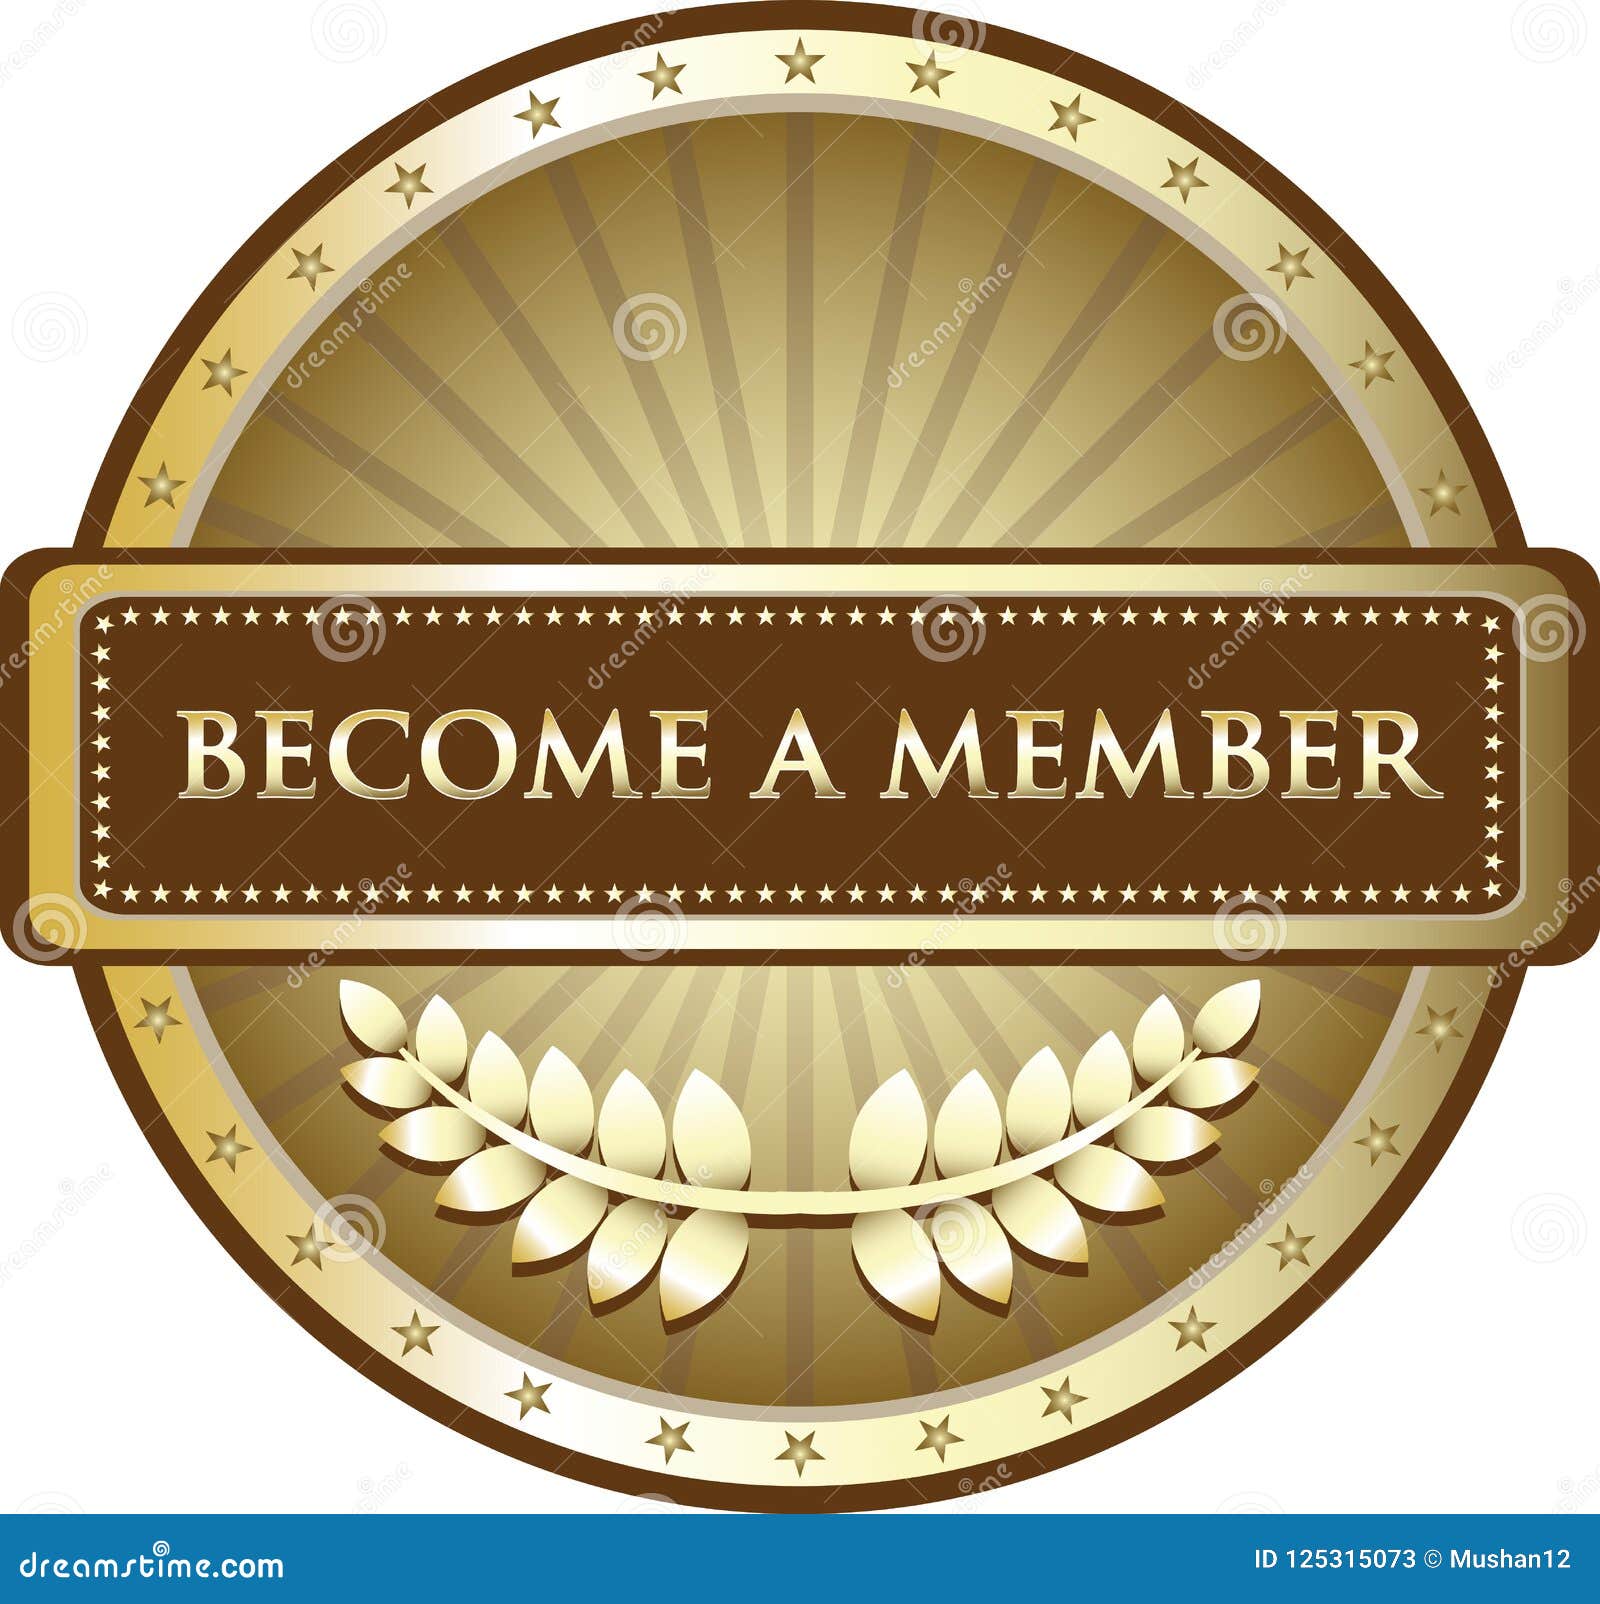 become a member gold label emblem